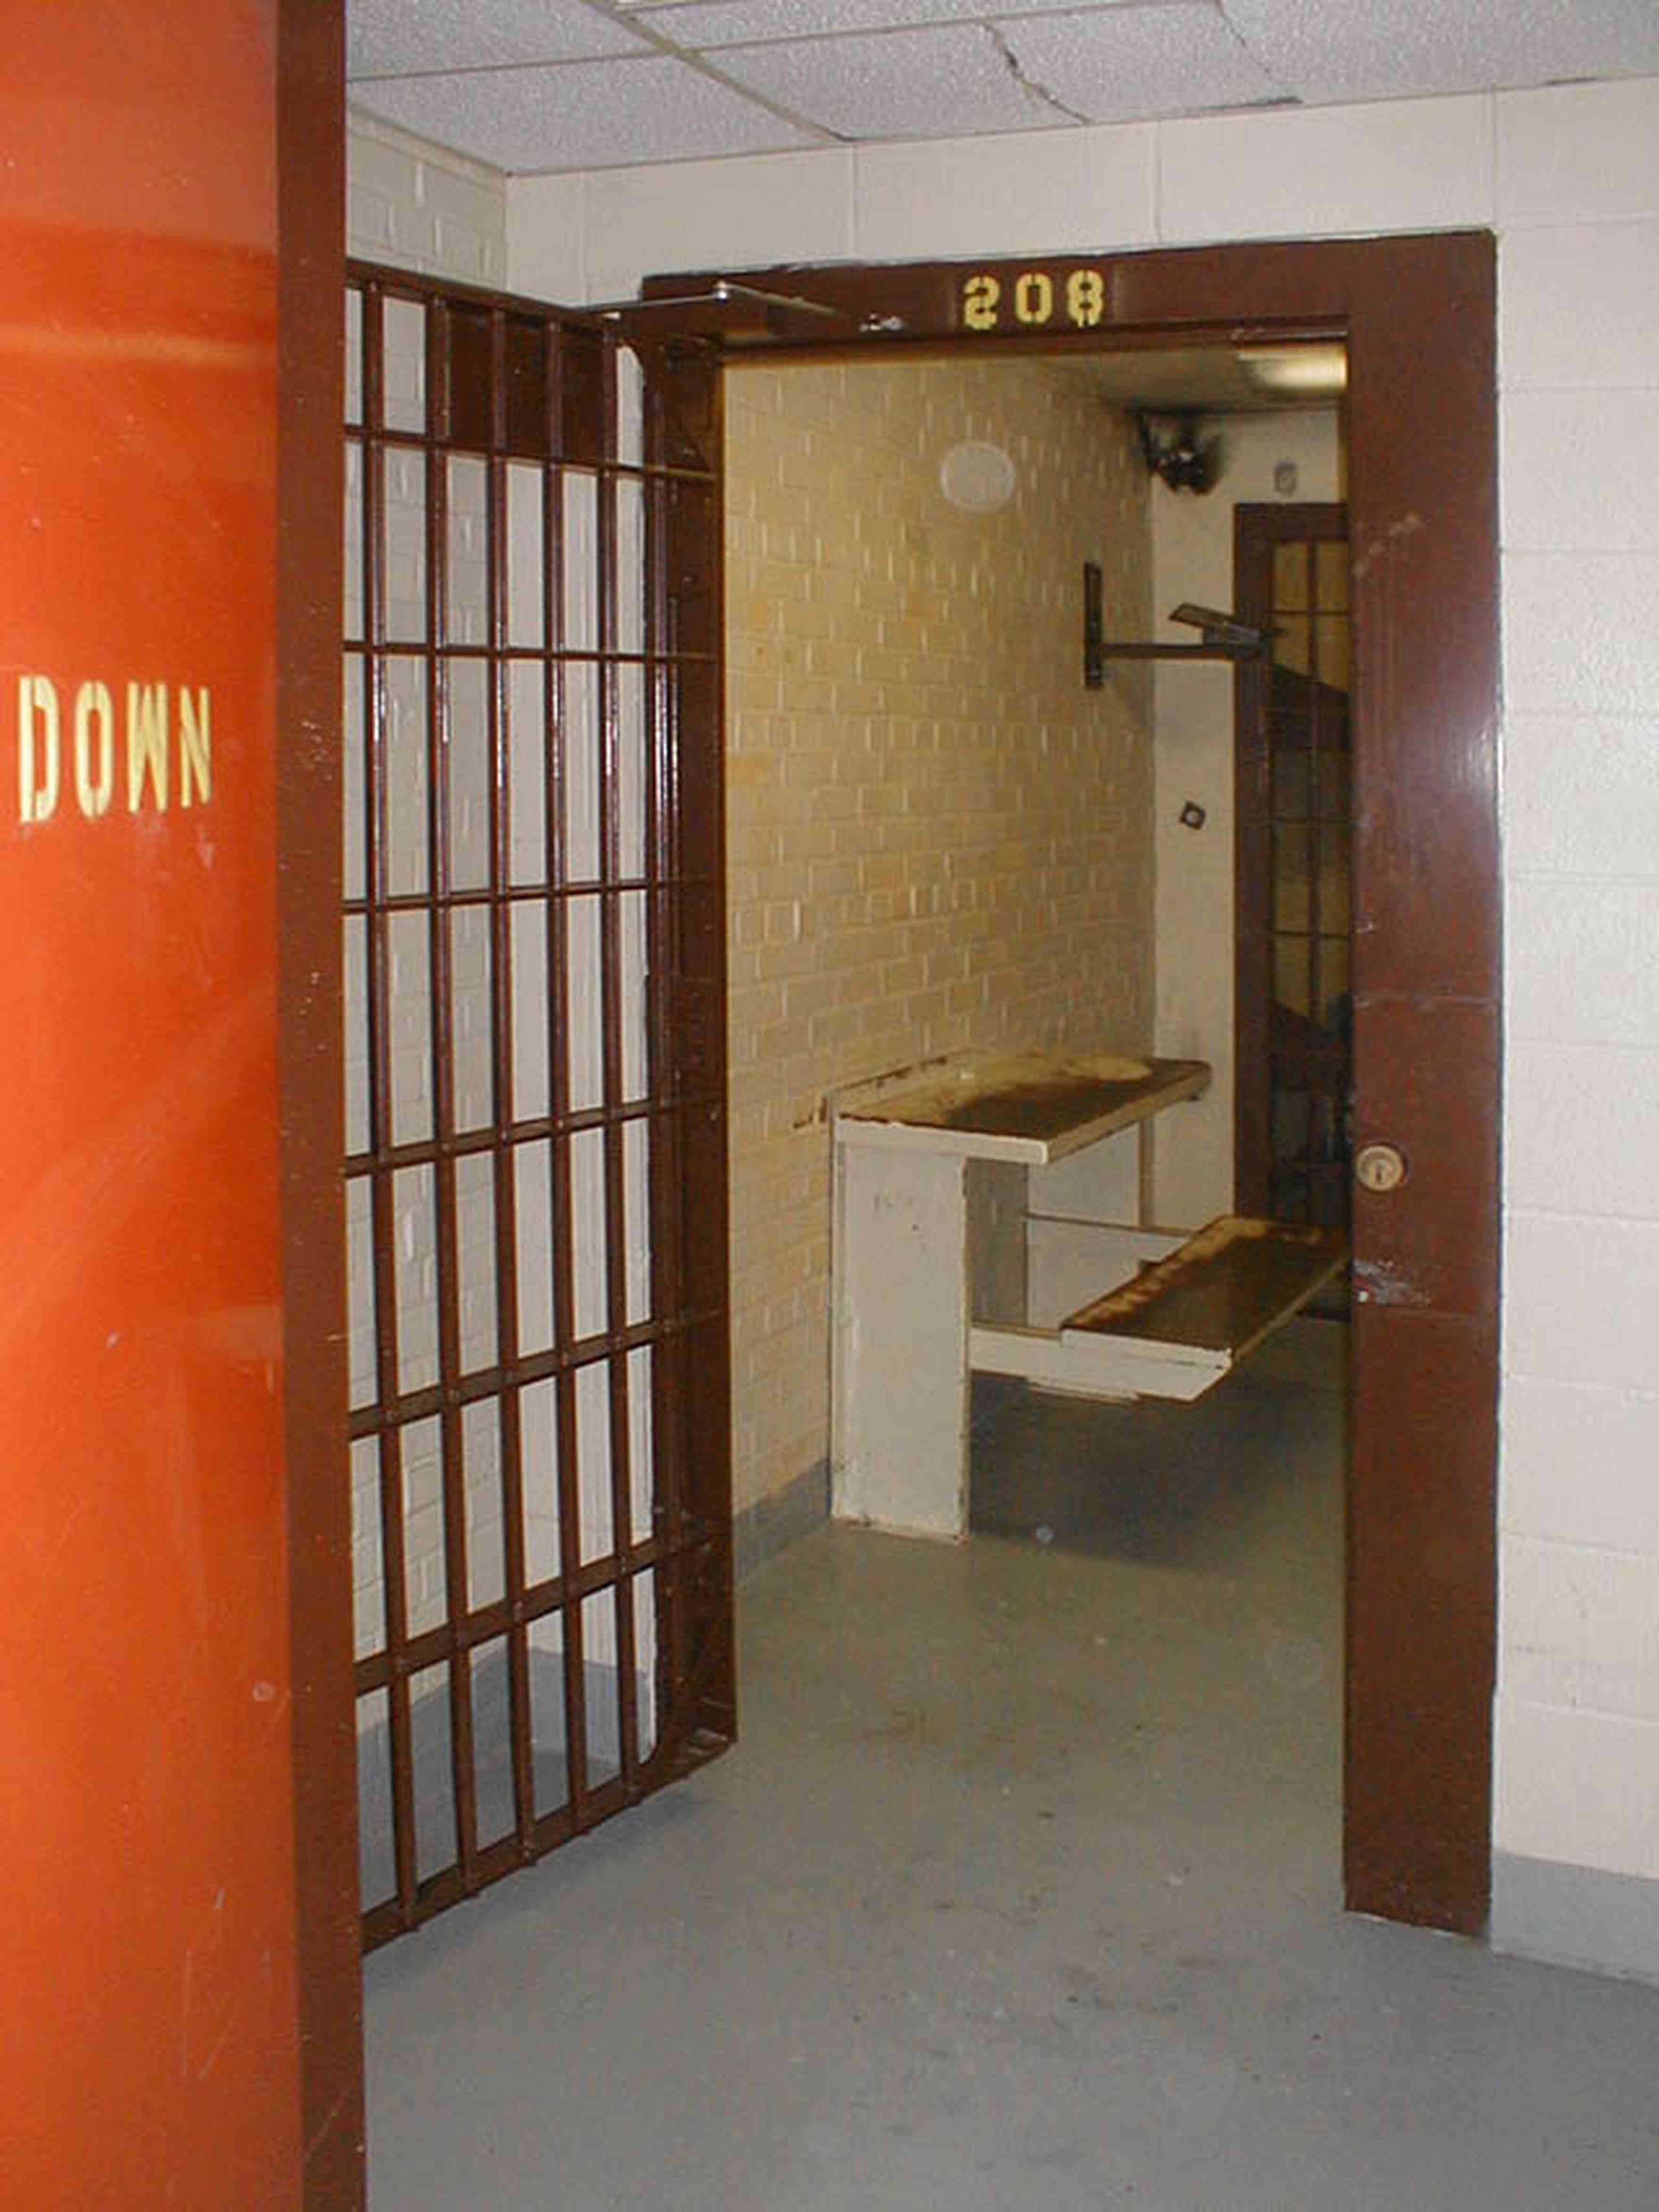 Milton:-Courthouse-Old-Jail_05.jpg:  cell, jail, bars, prisoner, courthouse